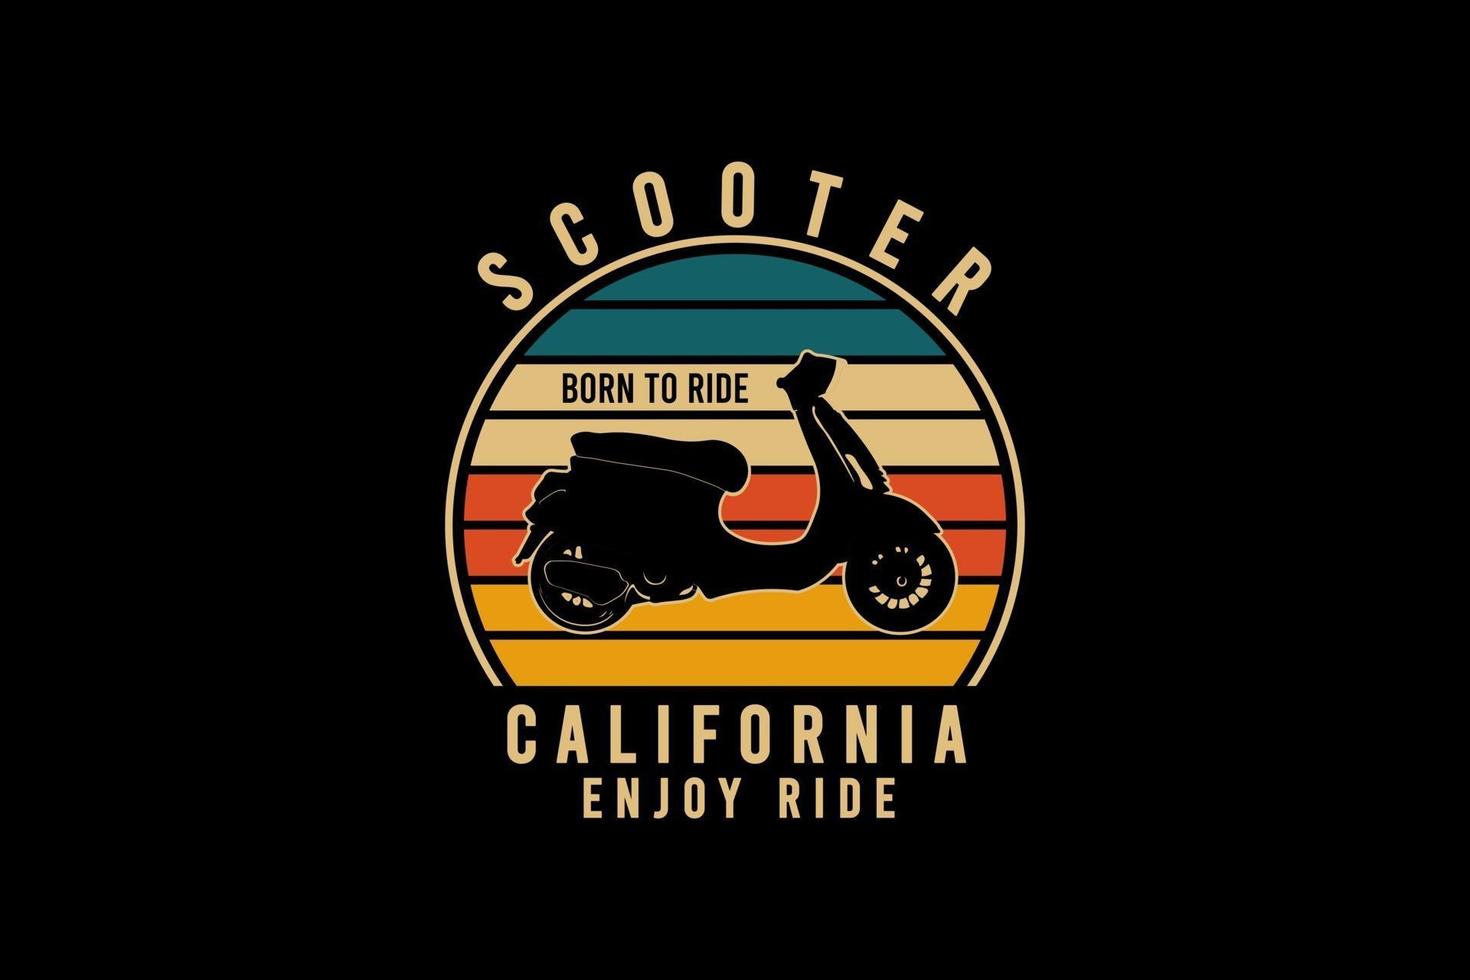 scooter california disfrutar del paseo, estilo retro vintage vector